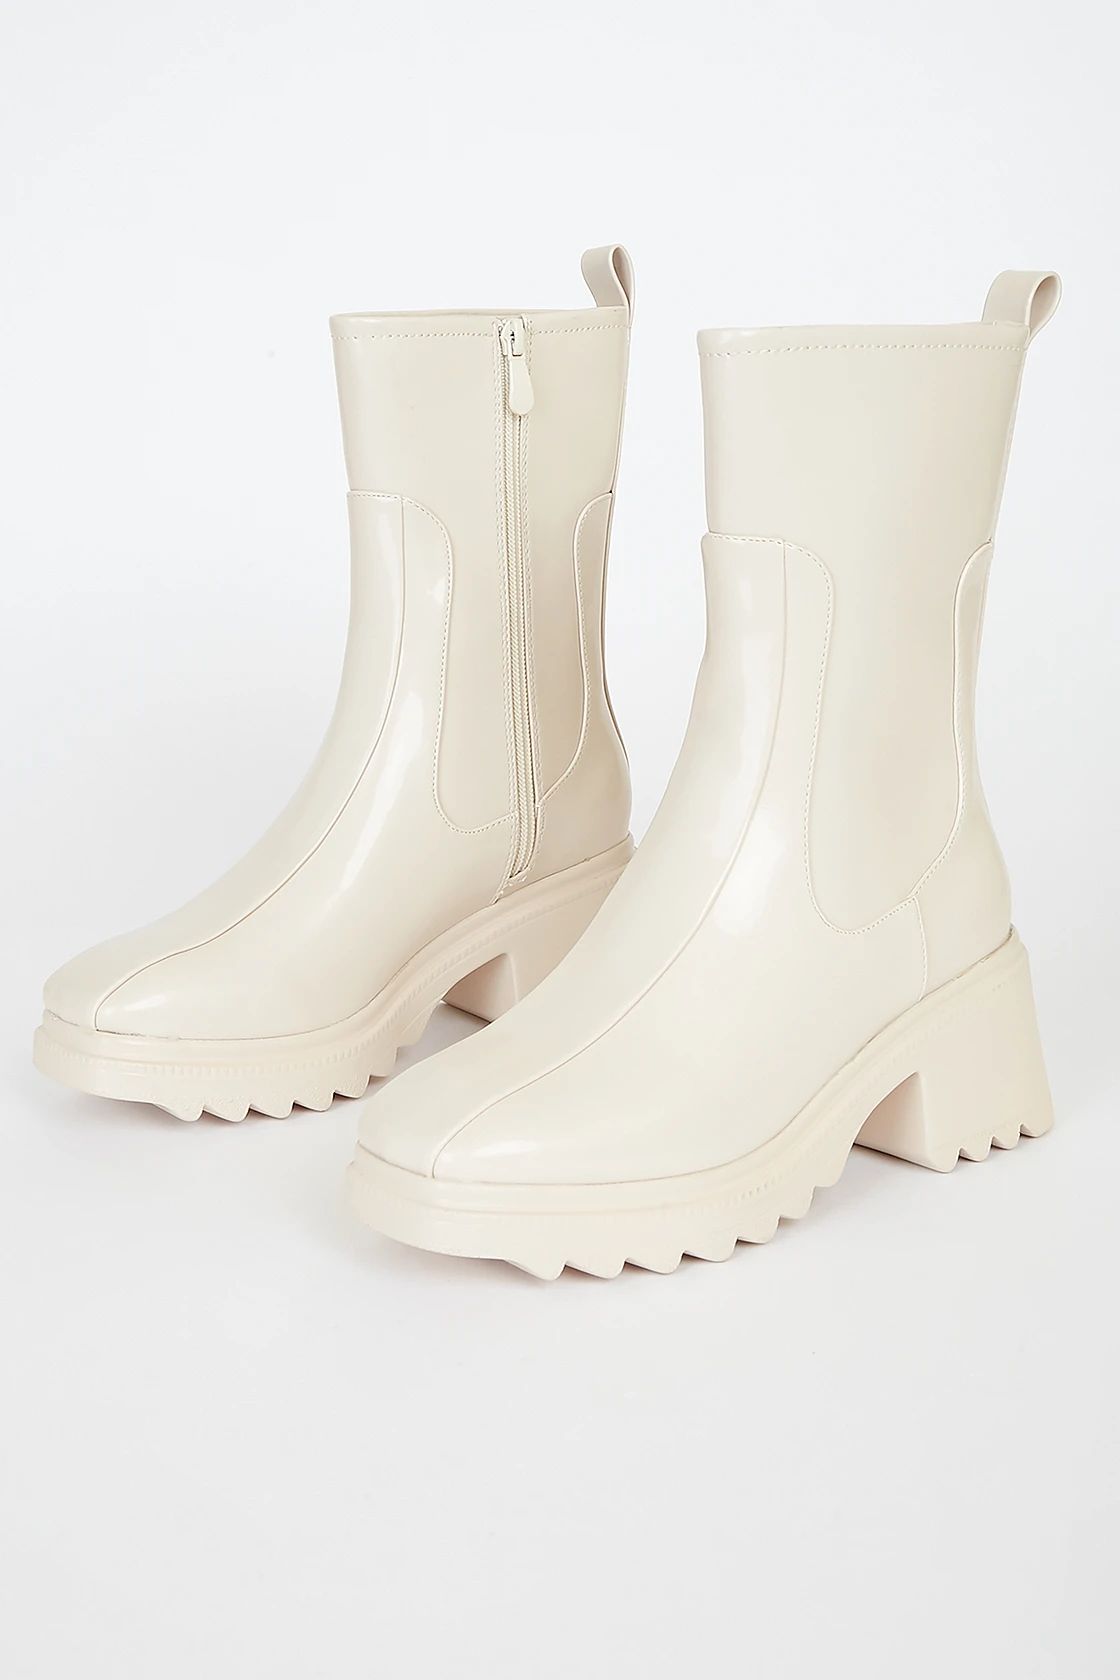 Rayne Light Nude Patent Mid-Calf Boots | Lulus (US)